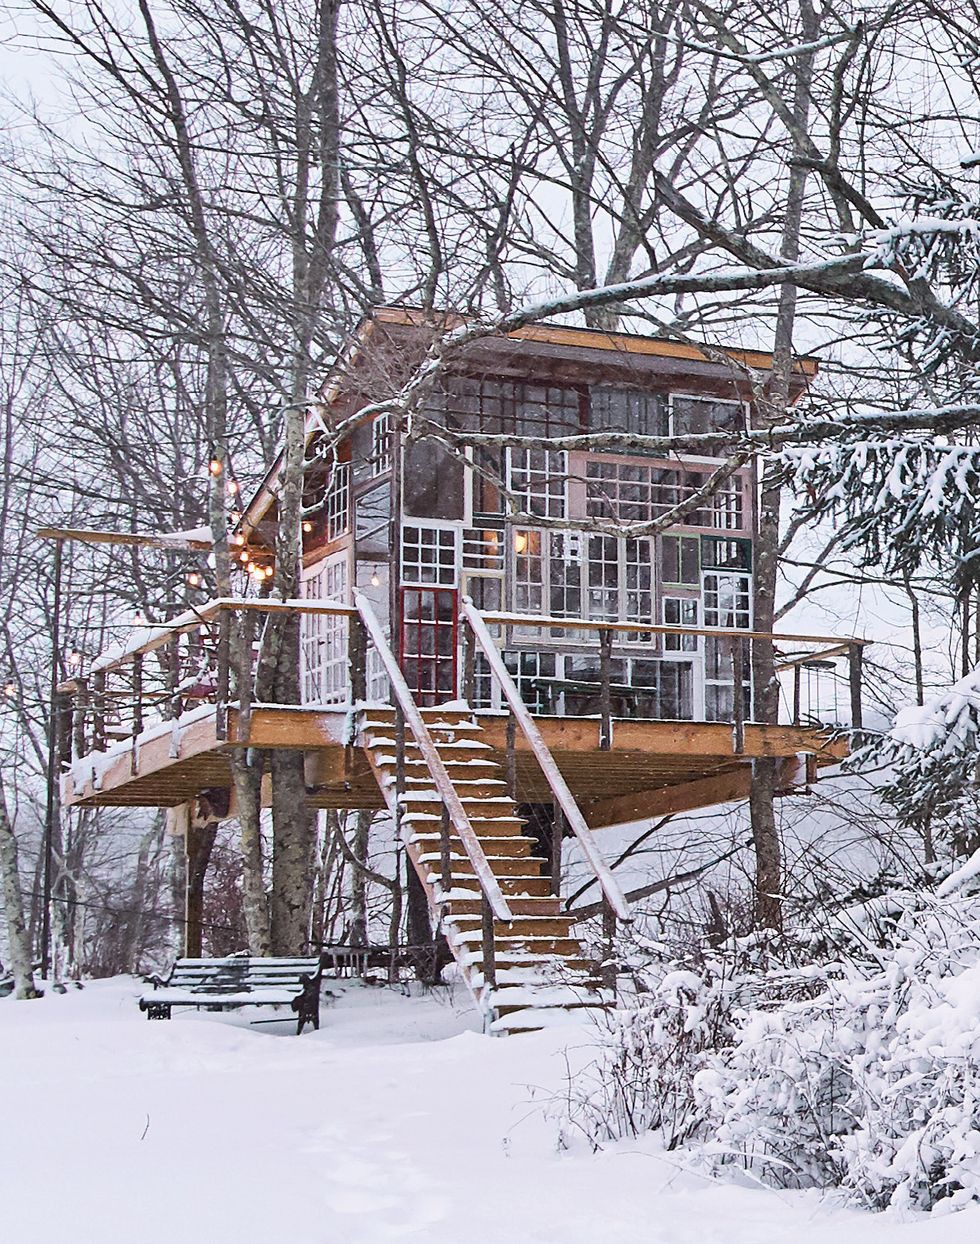 Hình ảnh toàn cảnh ngôi nhà trên cây rộng lớn với hệ cửa kính trong suốt, cửa ra vào màu đỏ, tuyết trắng bao quanh